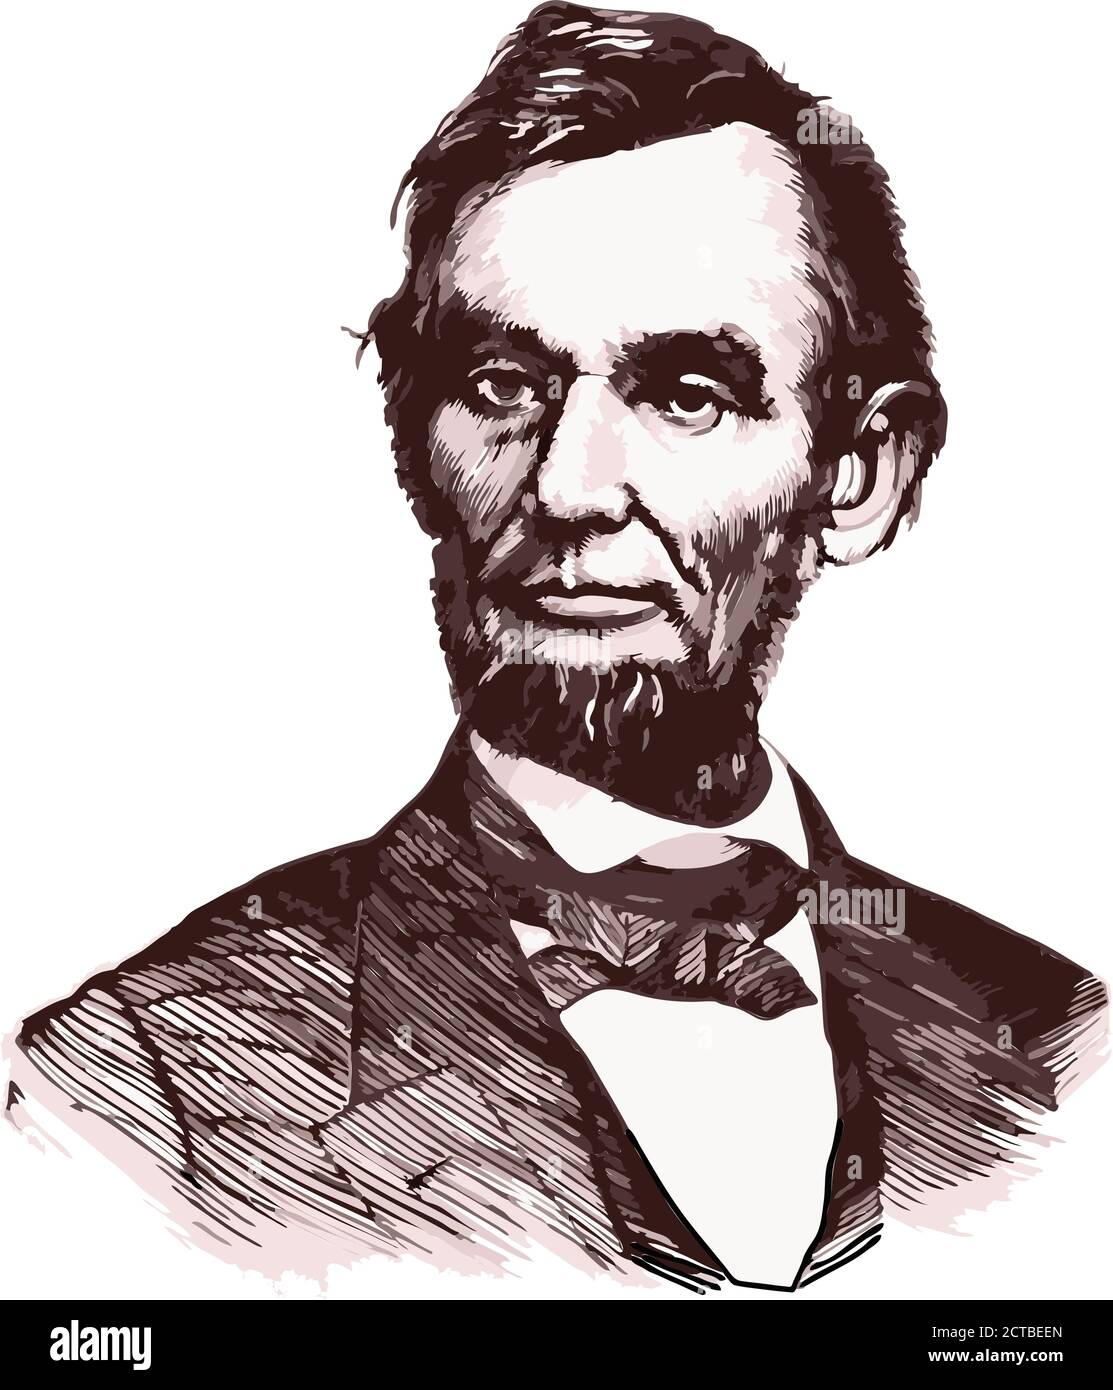 Portrait vectoriel du président Abraham Lincoln. Abraham Lincoln (1809 – 1865) était un homme d'État et un avocat américain qui a servi comme 16e président de t Illustration de Vecteur